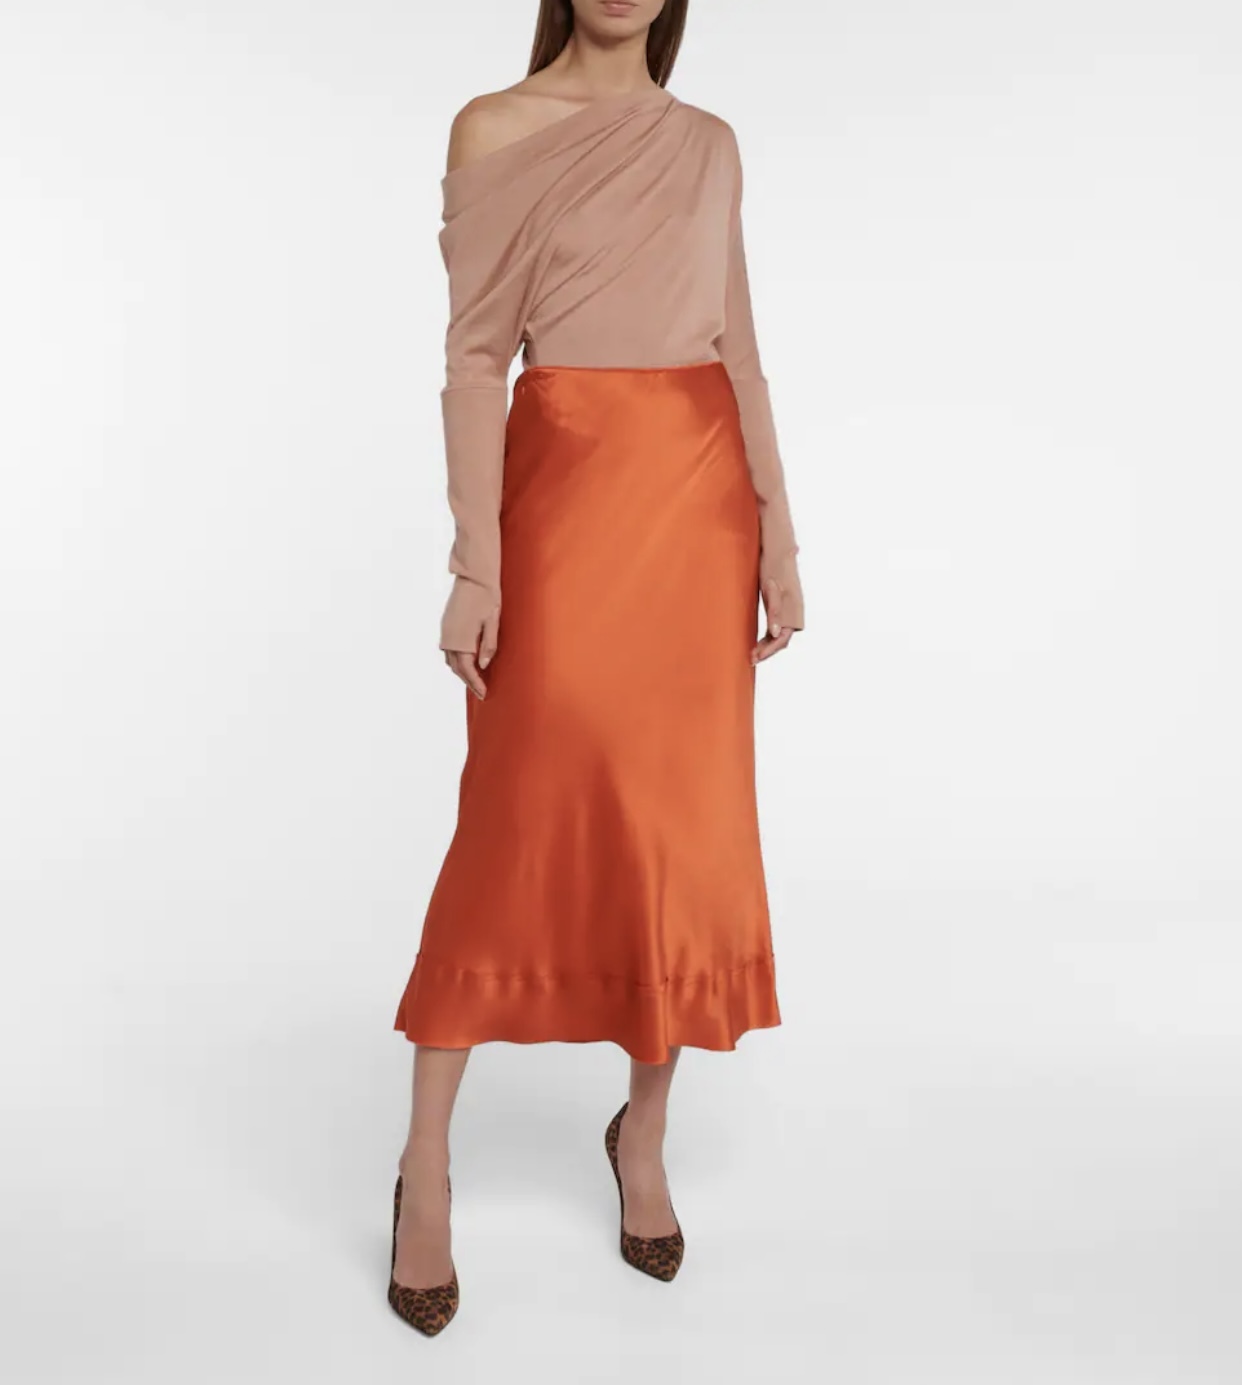 3 blusas 3 faldas que te harán 9 looks de invitada distintos | Telva.com